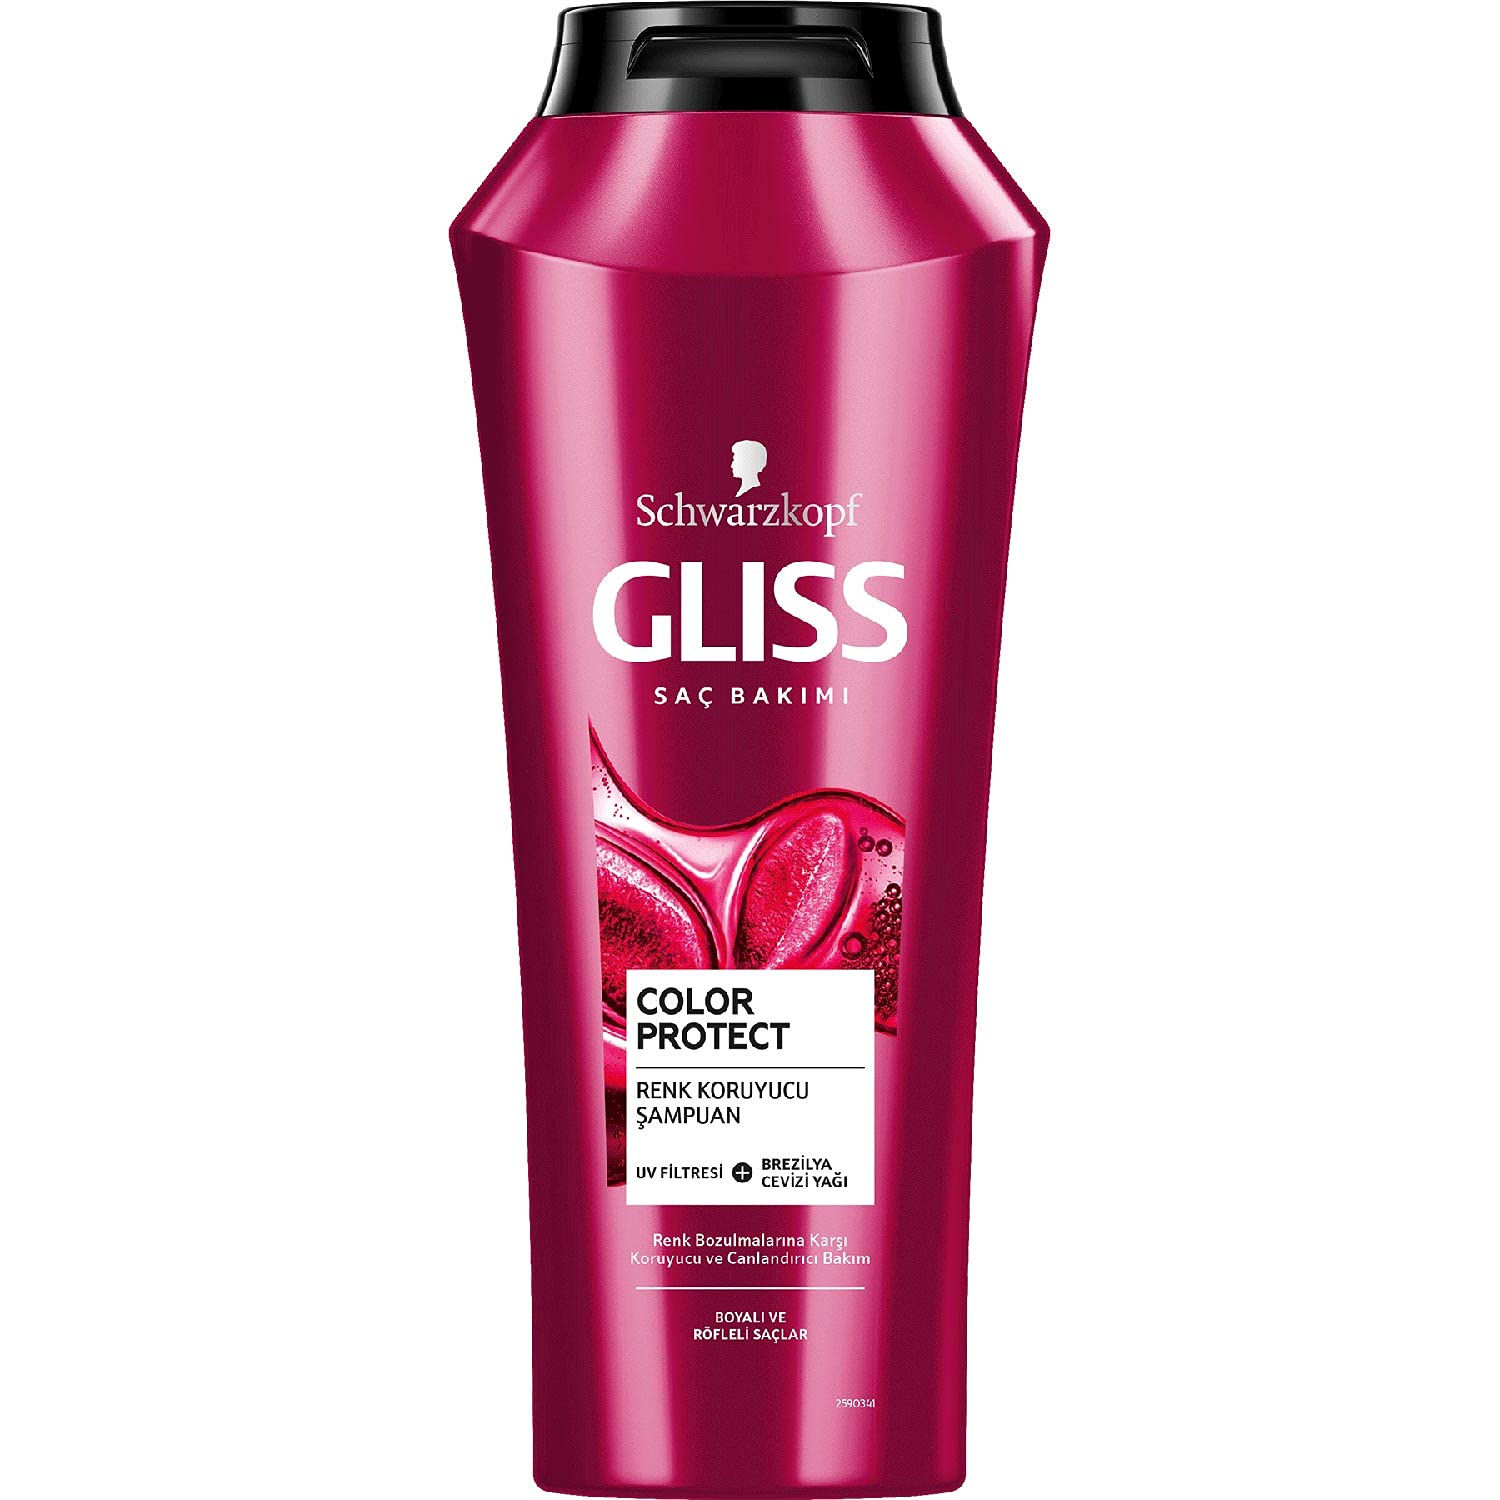 شامپو گلیس قرمز GLISS برای موهای رنگ شده Color Protect حجم 500 میلی